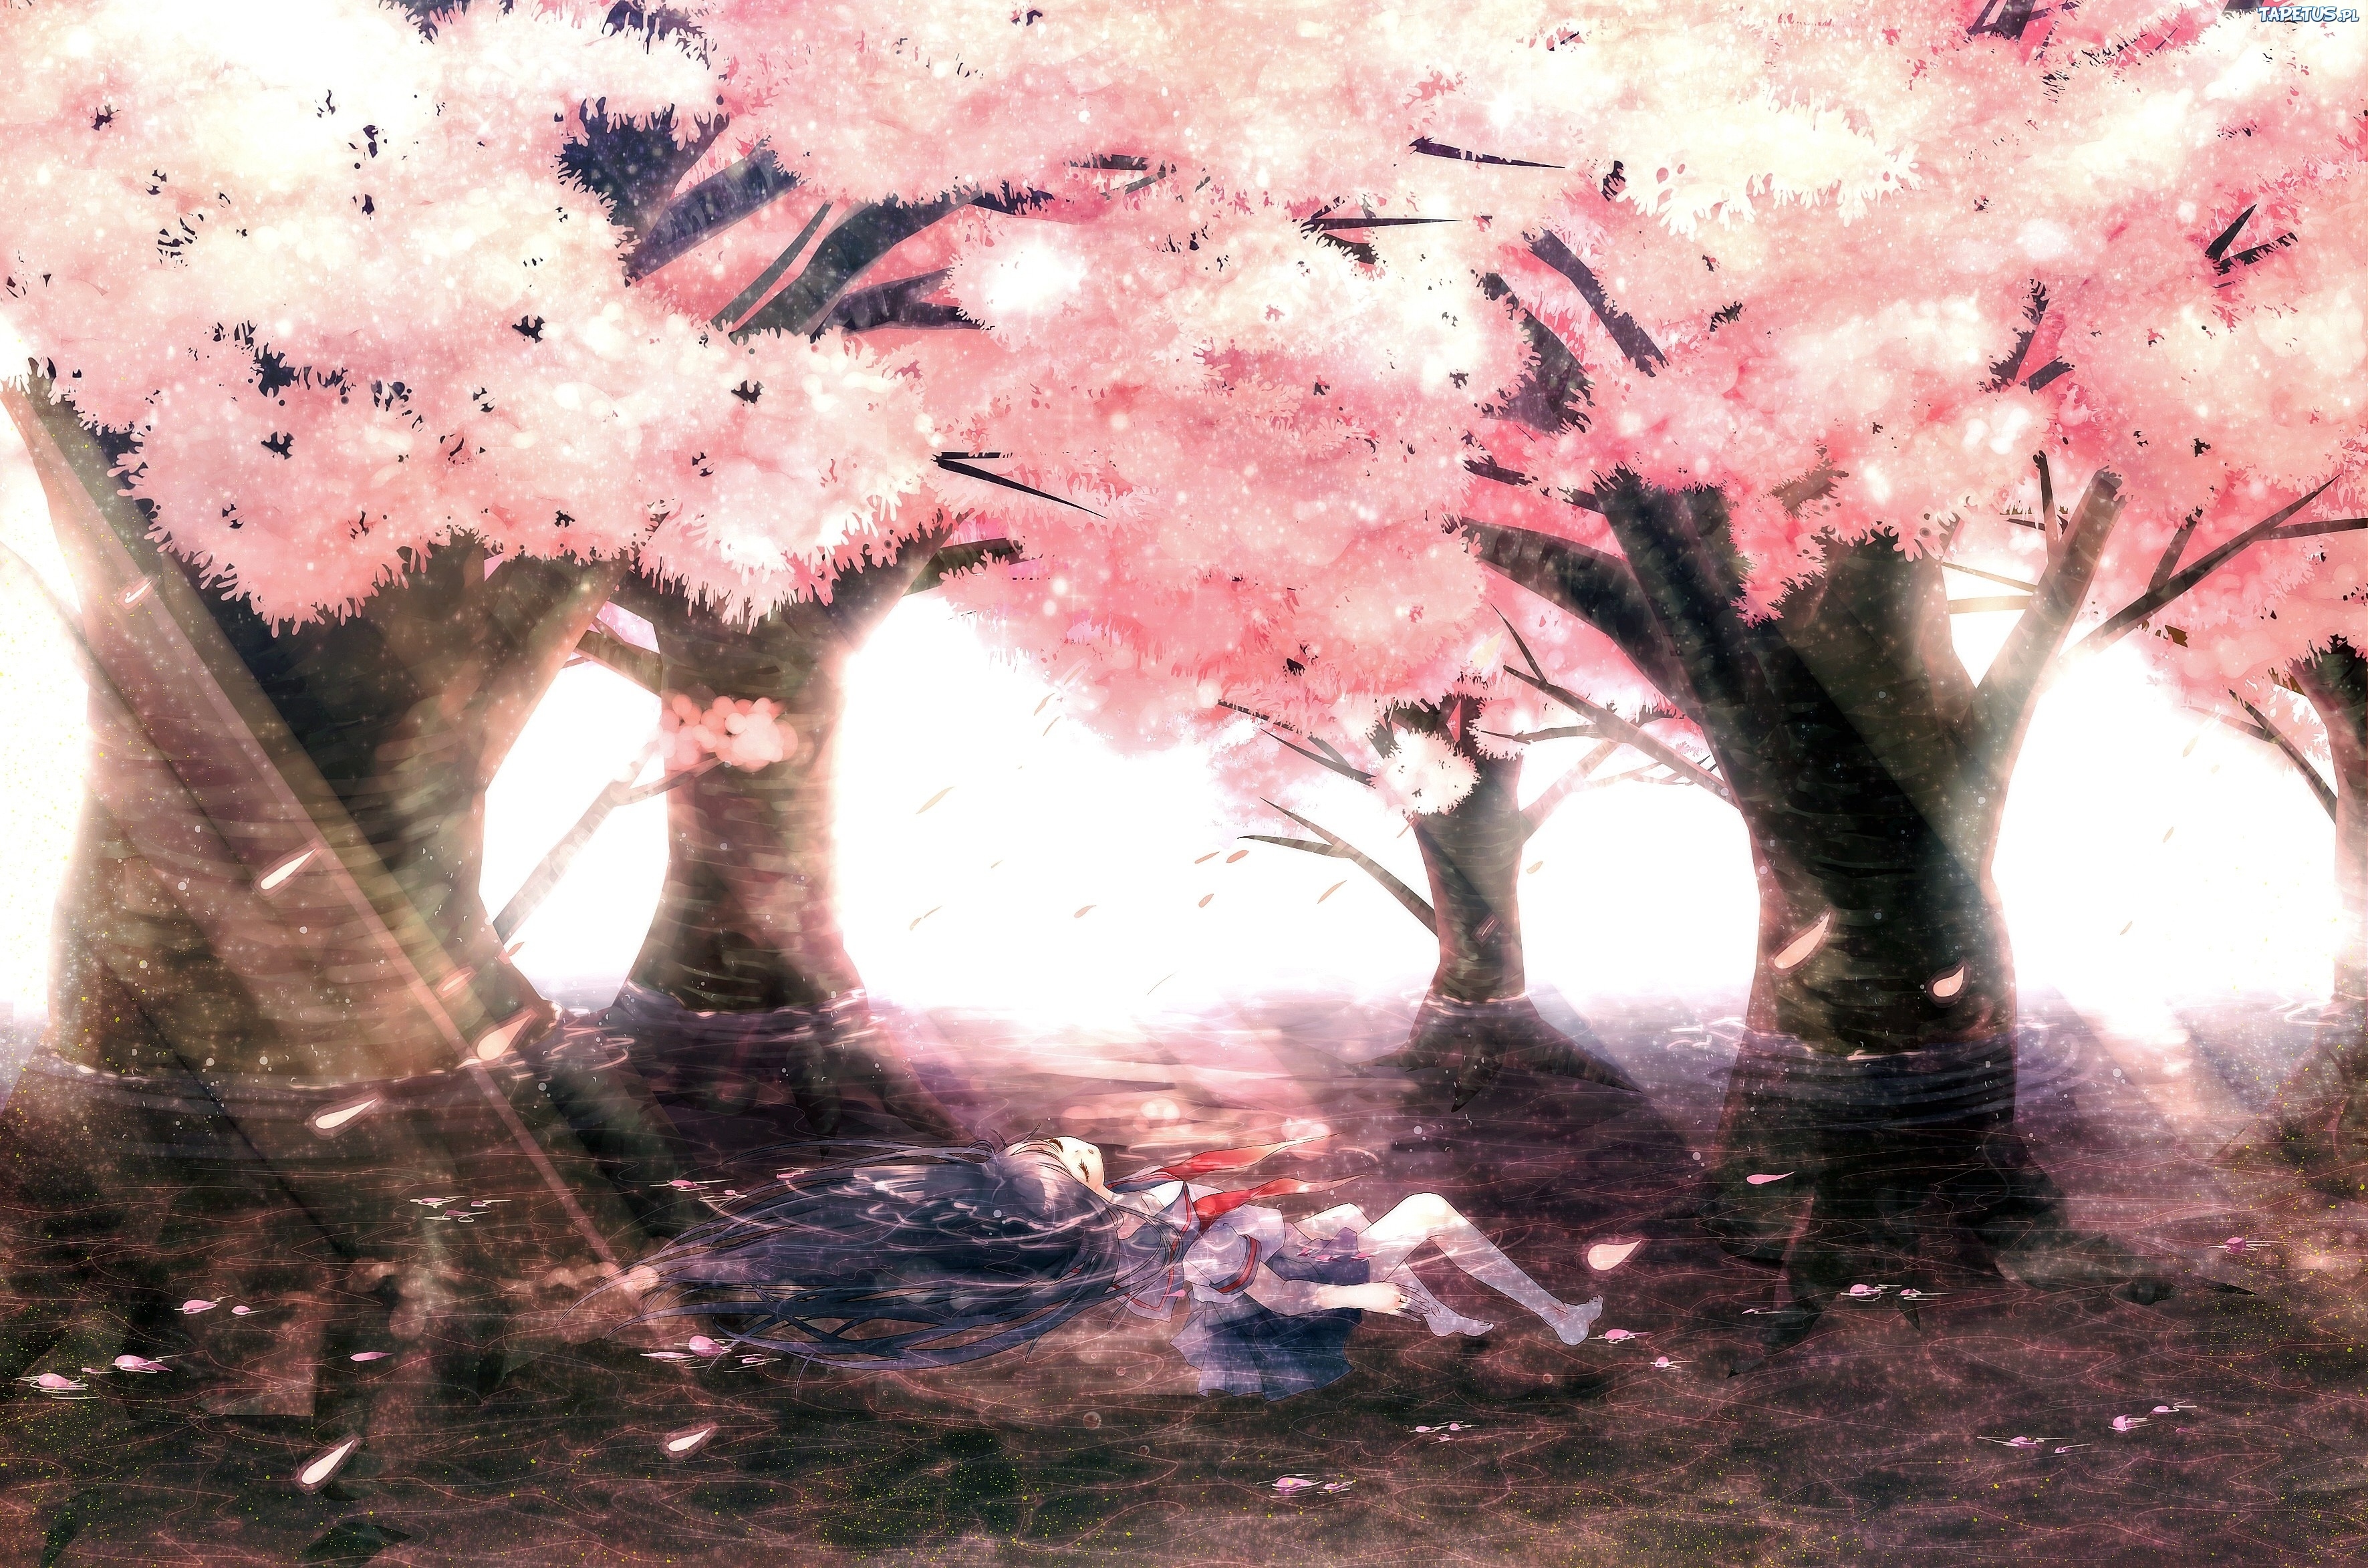 Nếu bạn đang cảm thấy căng thẳng và muốn tìm một không gian nghỉ ngơi yên tĩnh, thì hãy xem ảnh anime phong cảnh chill. Những hình ảnh đầy hoa lá, cỏ cây và nước biếc sẽ khiến bạn cảm thấy thư giãn hẳn.